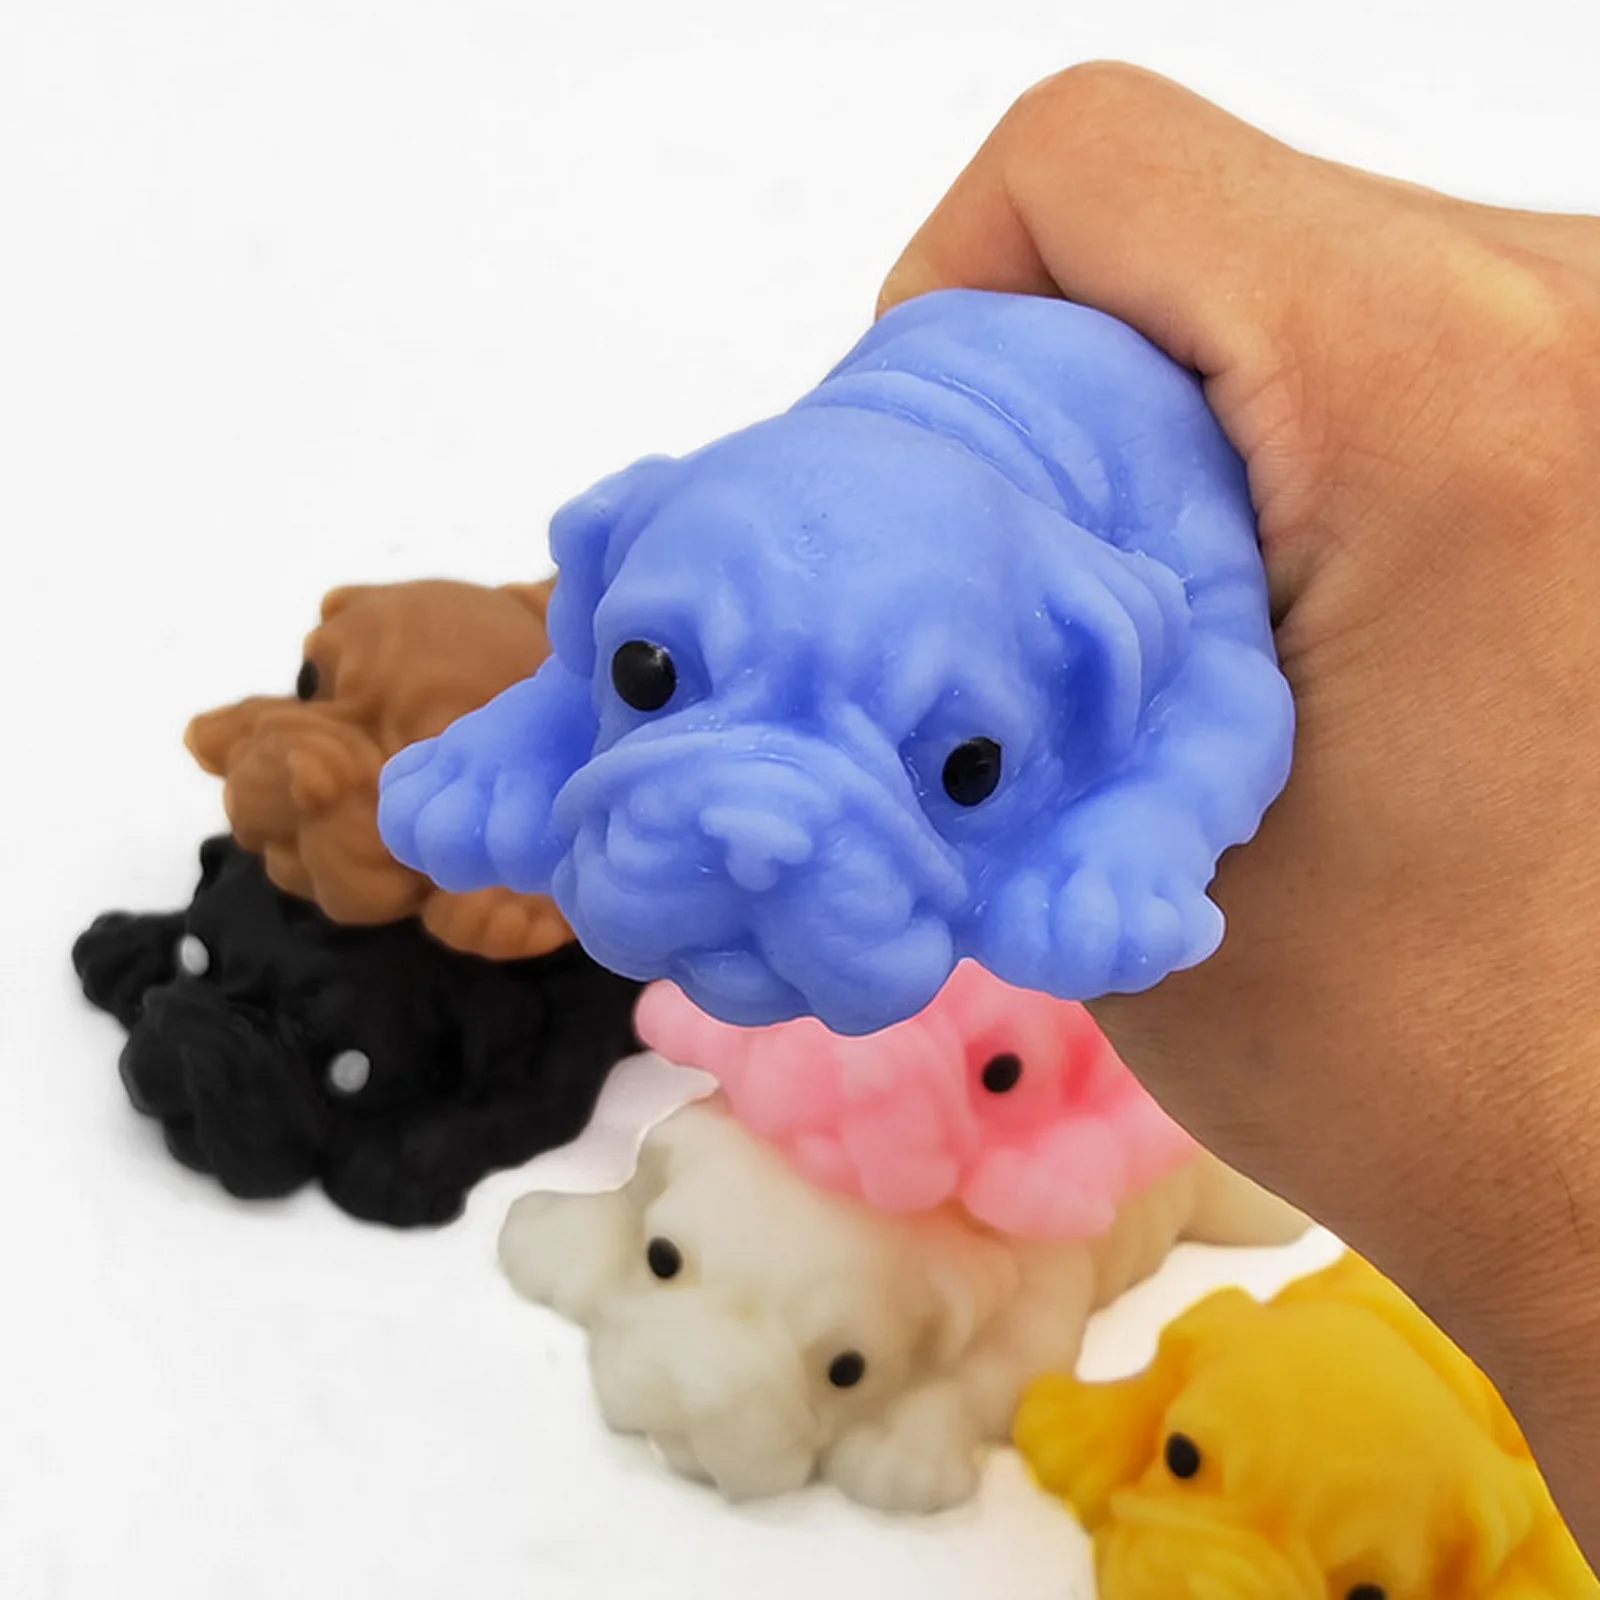 Nette Squeeze Mops Hund Spielzeug Weiche Angst Relief Stress Dekompression Sensorischen Squishies Spielzeug für Erwachsene Kinder Geburtstag Weihnachten Geschenk